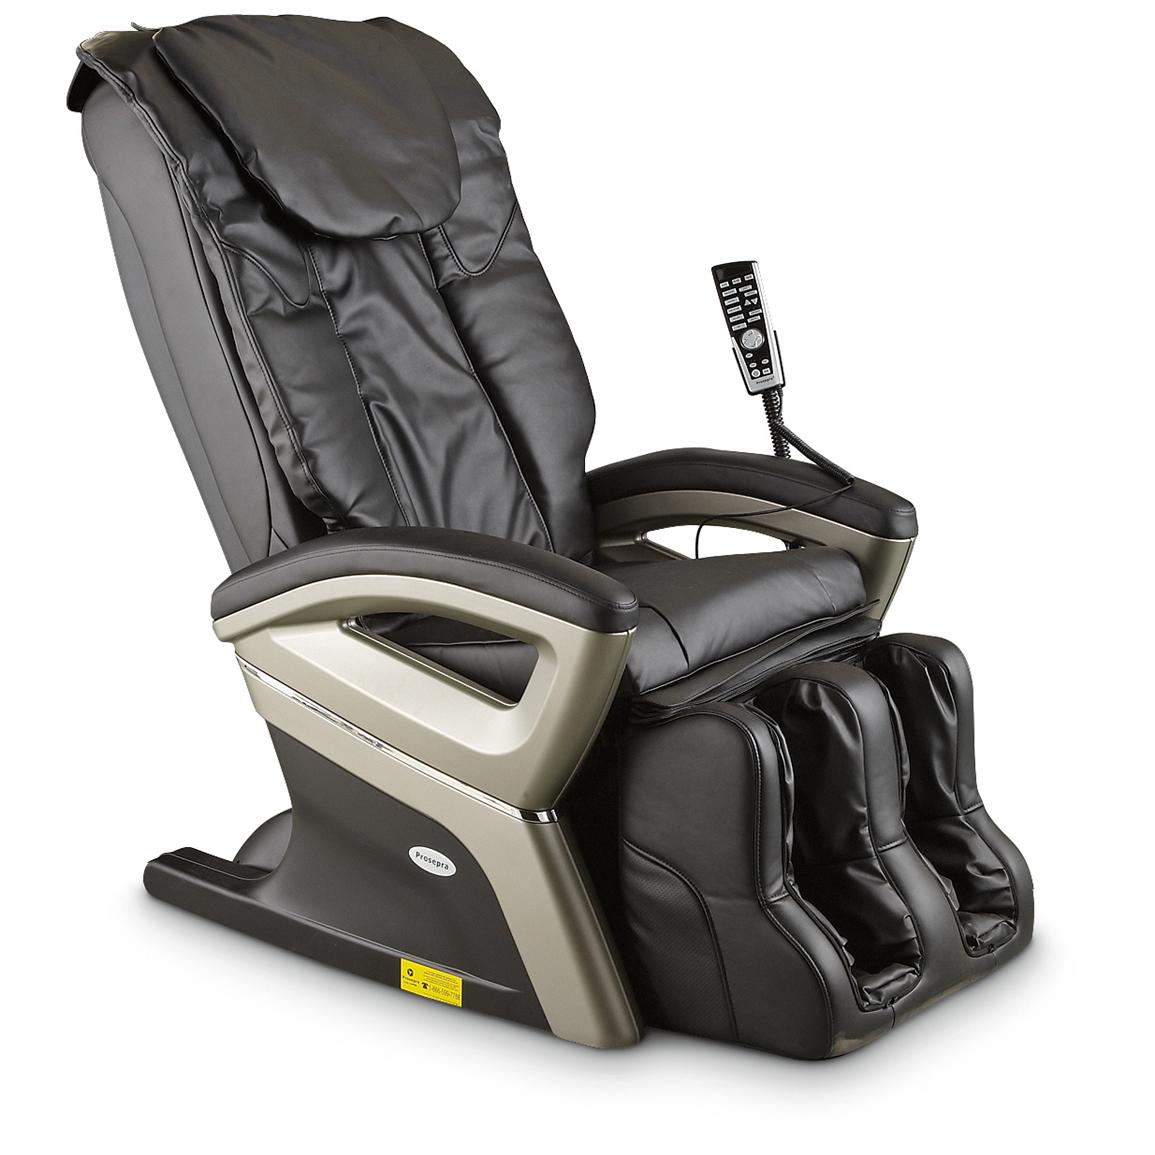 Prosepra® Electric Komfort Massage Chair with Ottoman - 228871, Massage